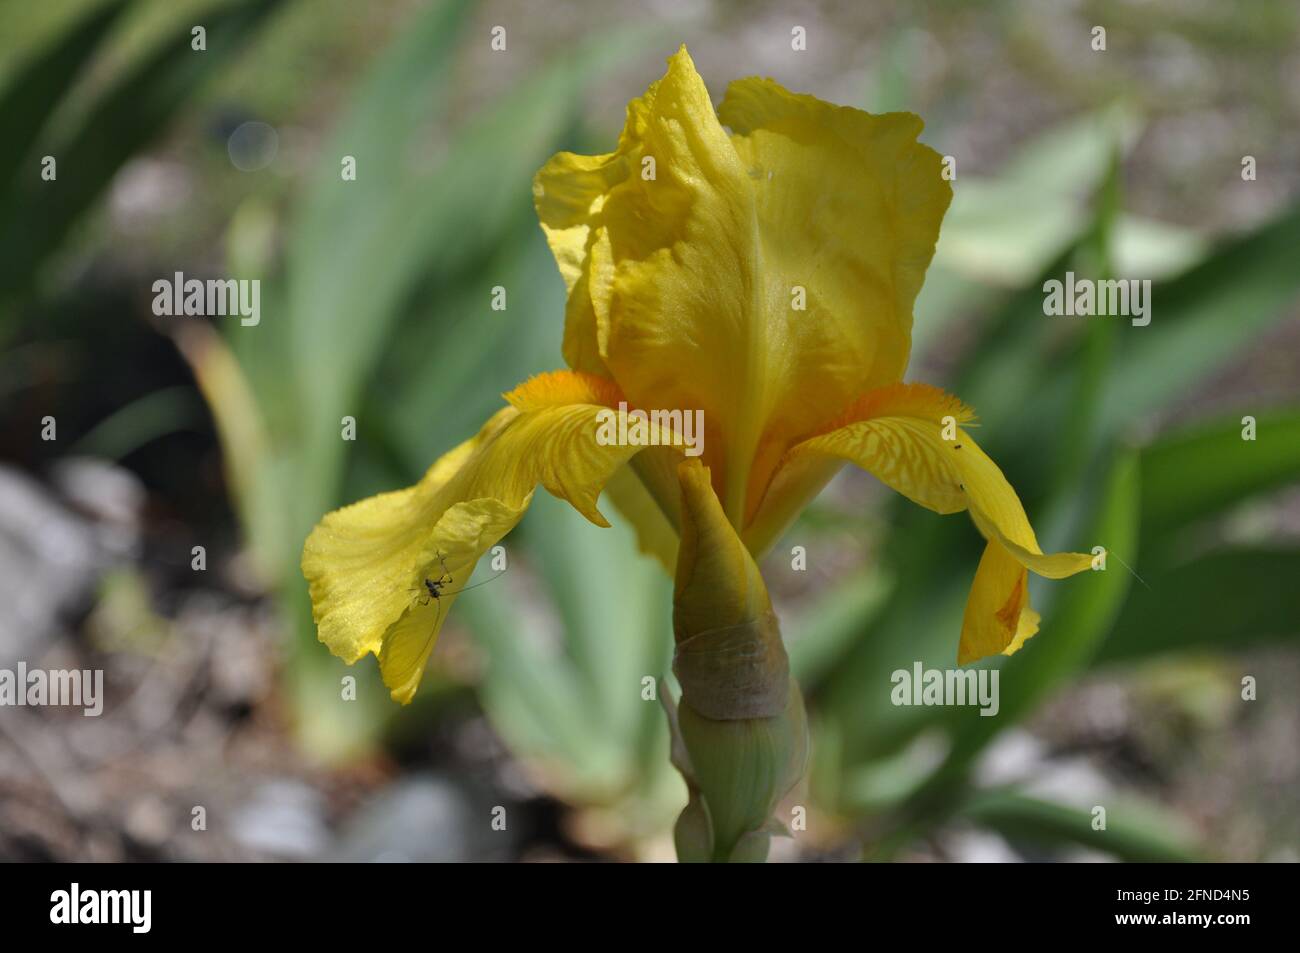 Flor de iris con hojas verdes. El iris amarillo con barba florece en primavera en un día nublado Foto de stock